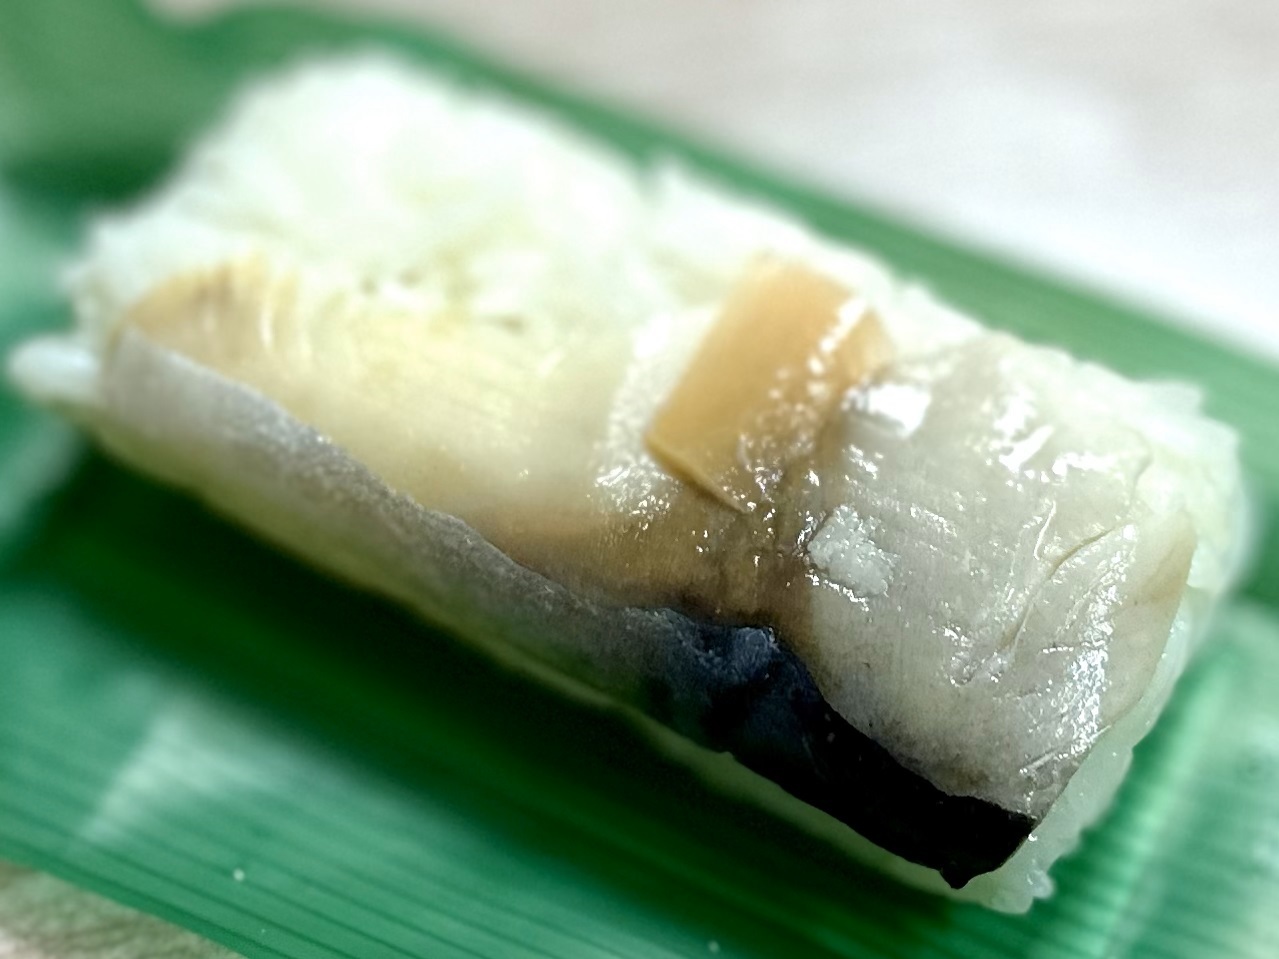 パクッと気軽に食べられるサイズの早寿司